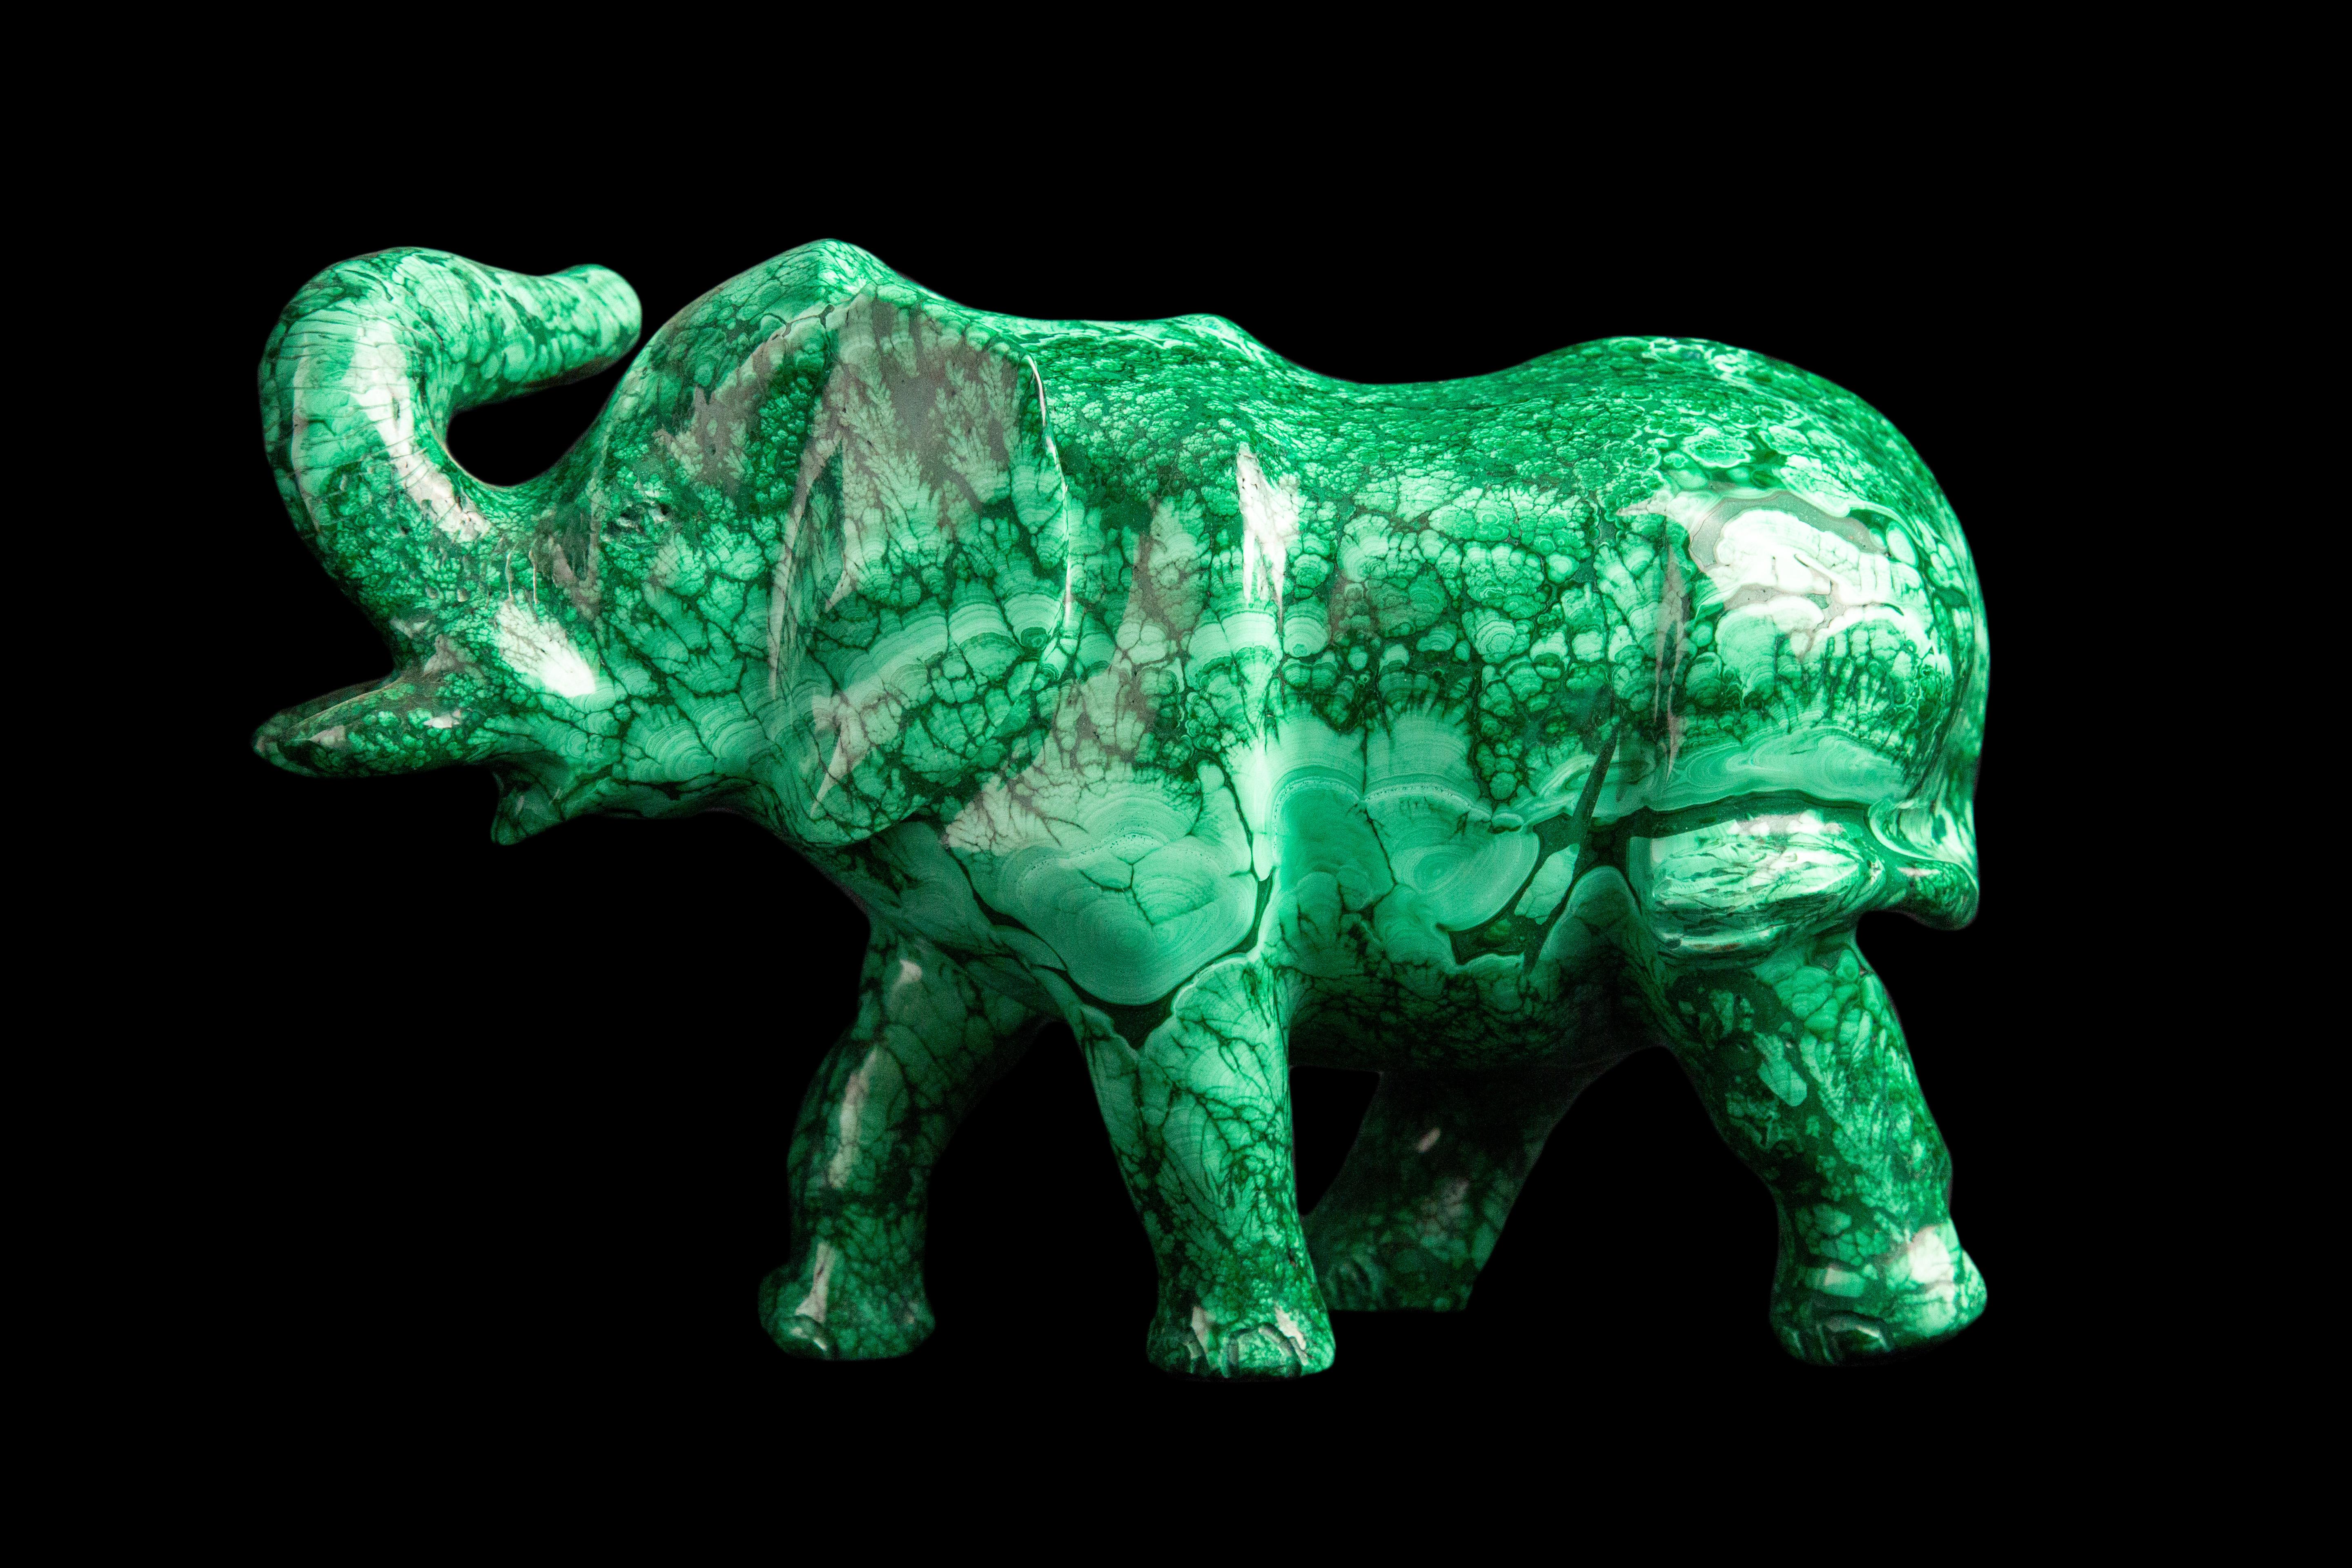 Cet éléphant exquis en malachite sculpté à la main est une œuvre d'art unique et élégante qui mettra en valeur n'importe quel espace. L'éléphant symbolise la sagesse, la force et la loyauté, tandis que la pierre de malachite apporte harmonie,